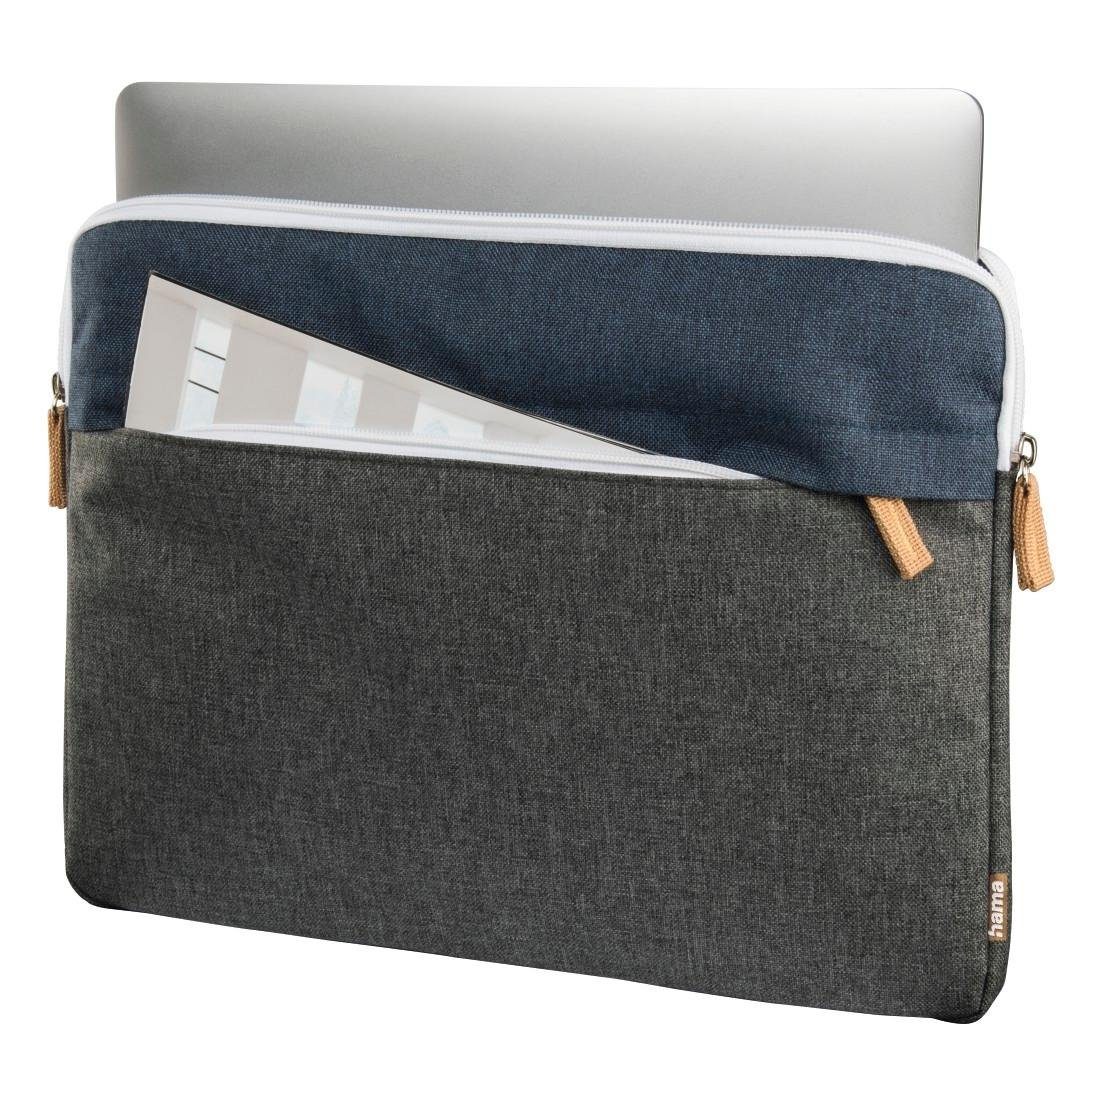 34 Tasche Marineblau/Dunkelgrau Laptoptasche Laptop-Sleeve bis 13,3" cm Florenz Hama